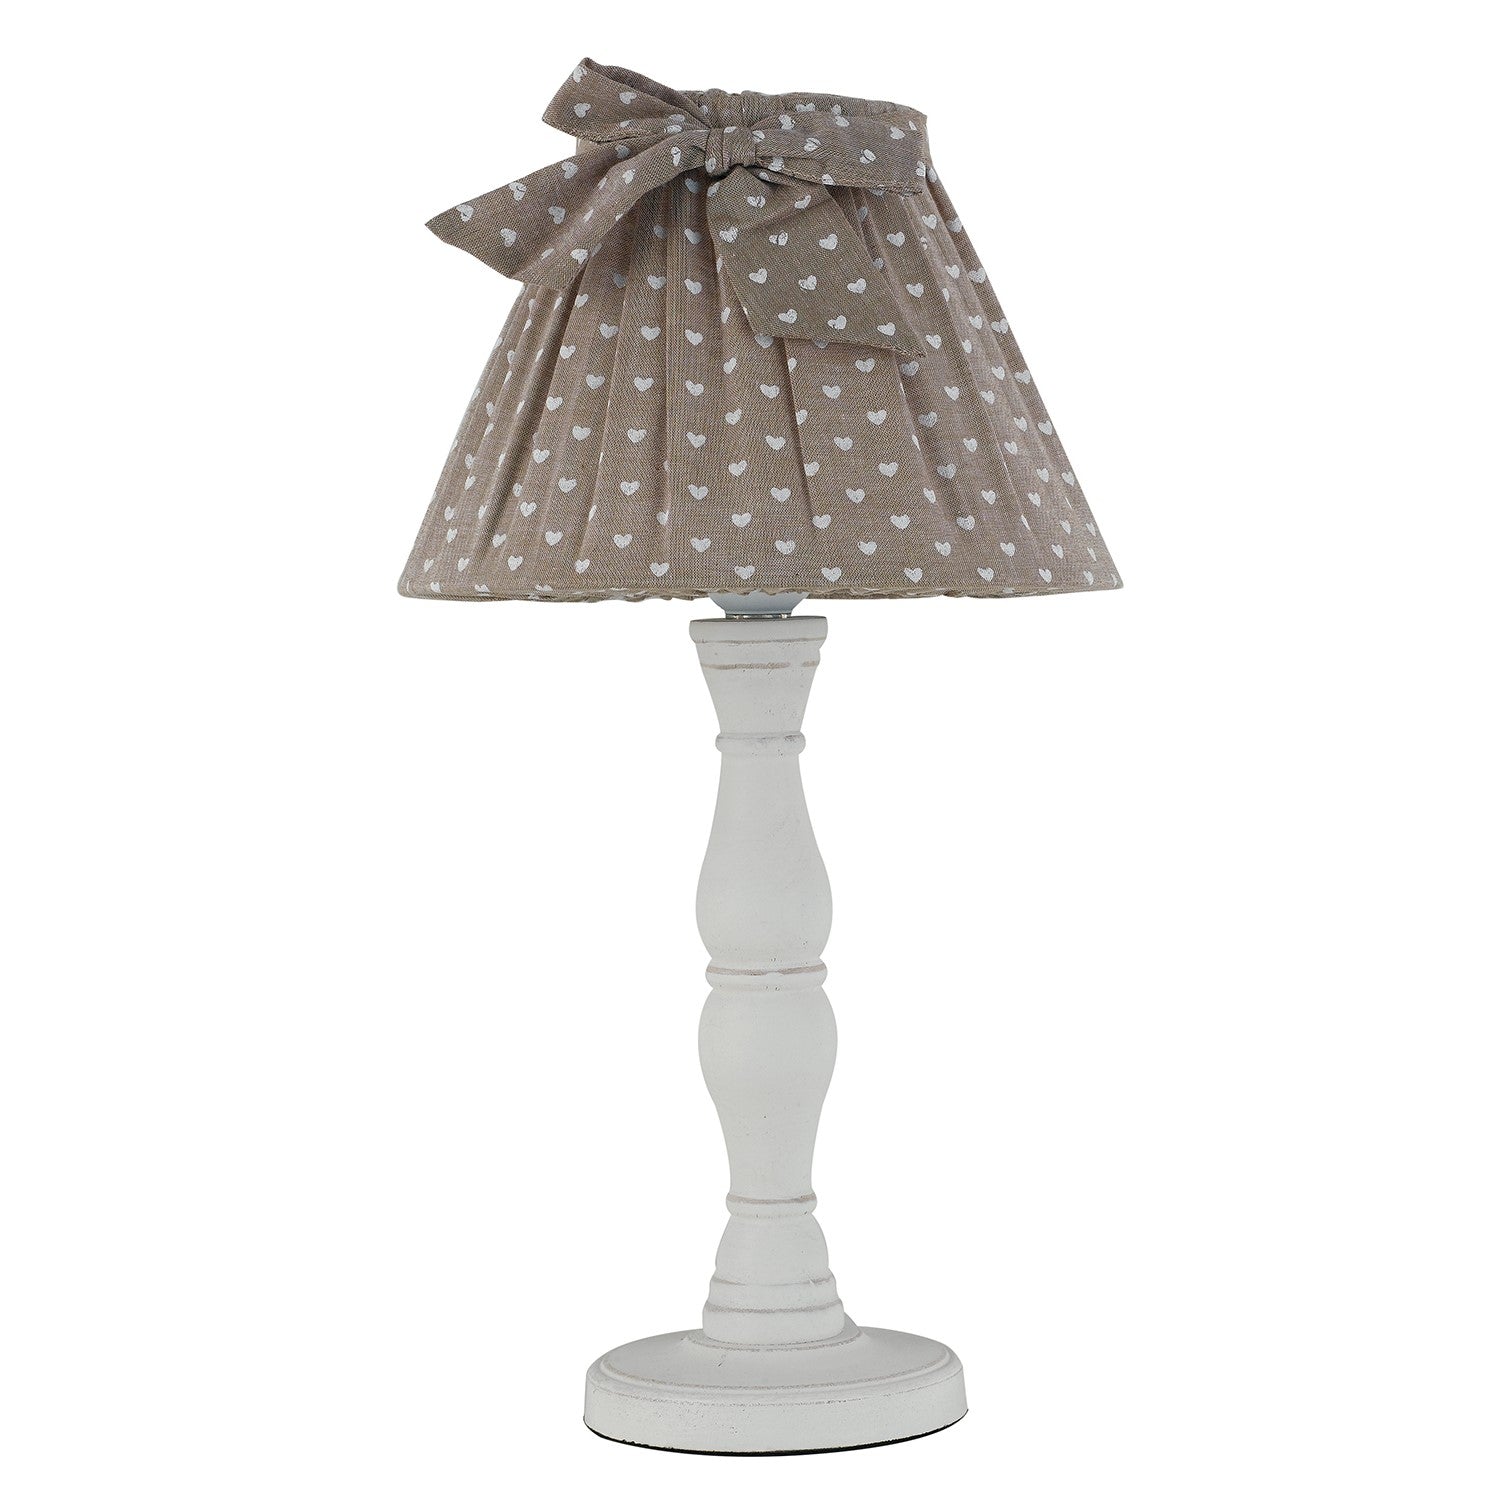 Lampe de table SWEET en bois naturel et abat-jour en tissu gris tourterelle